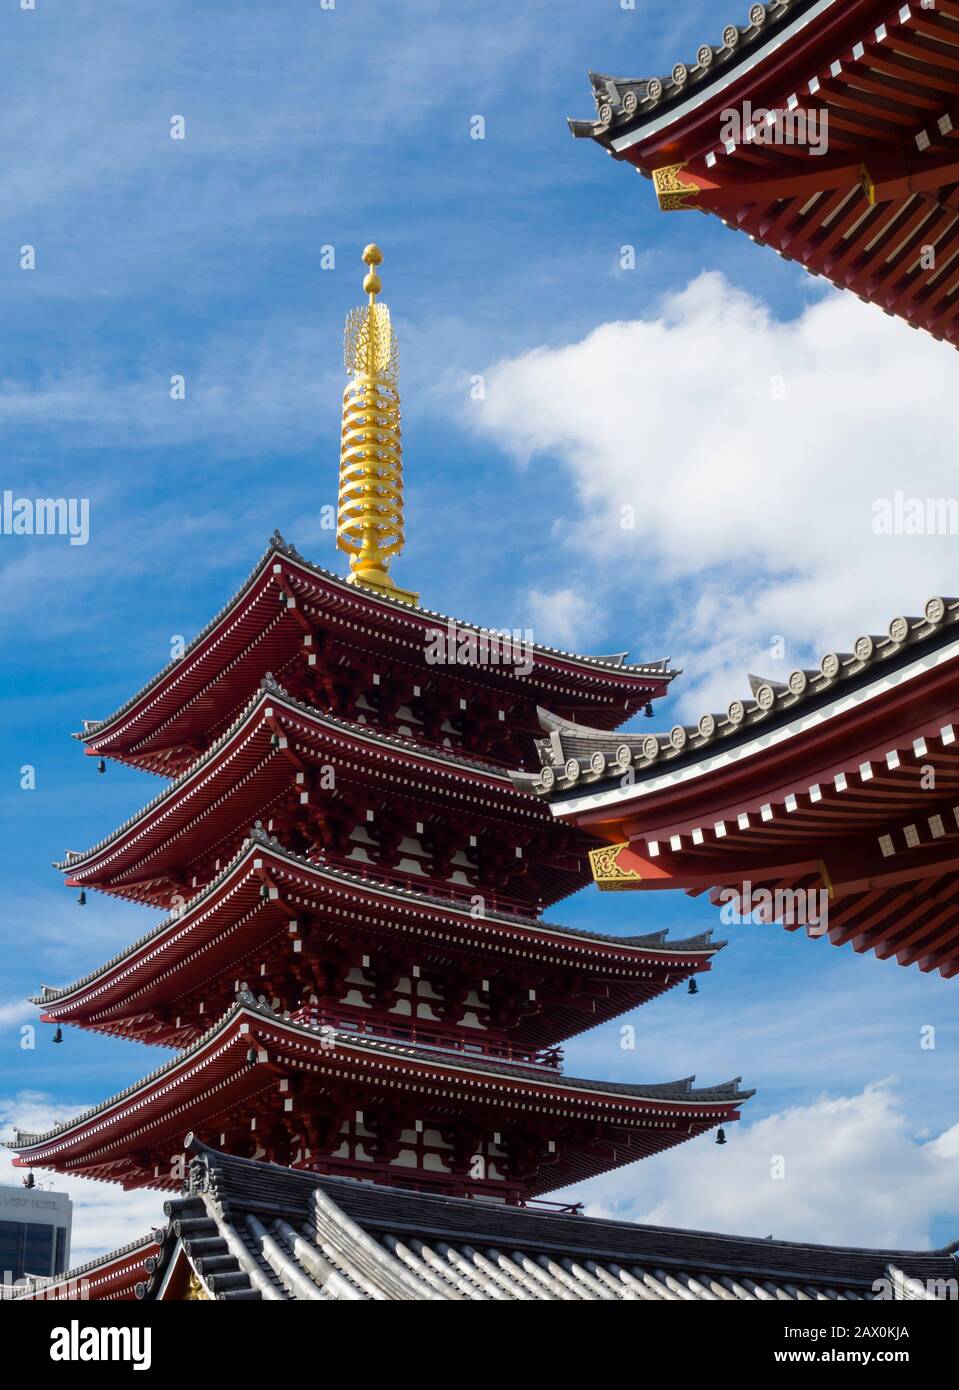 Tokyo, Japon - 10 octobre 2018 : pagode de cinq étages au temple Sensoji (aussi : temple Asakusa Kannon) au temple de Tokyo Asakusa Shinto. Banque D'Images